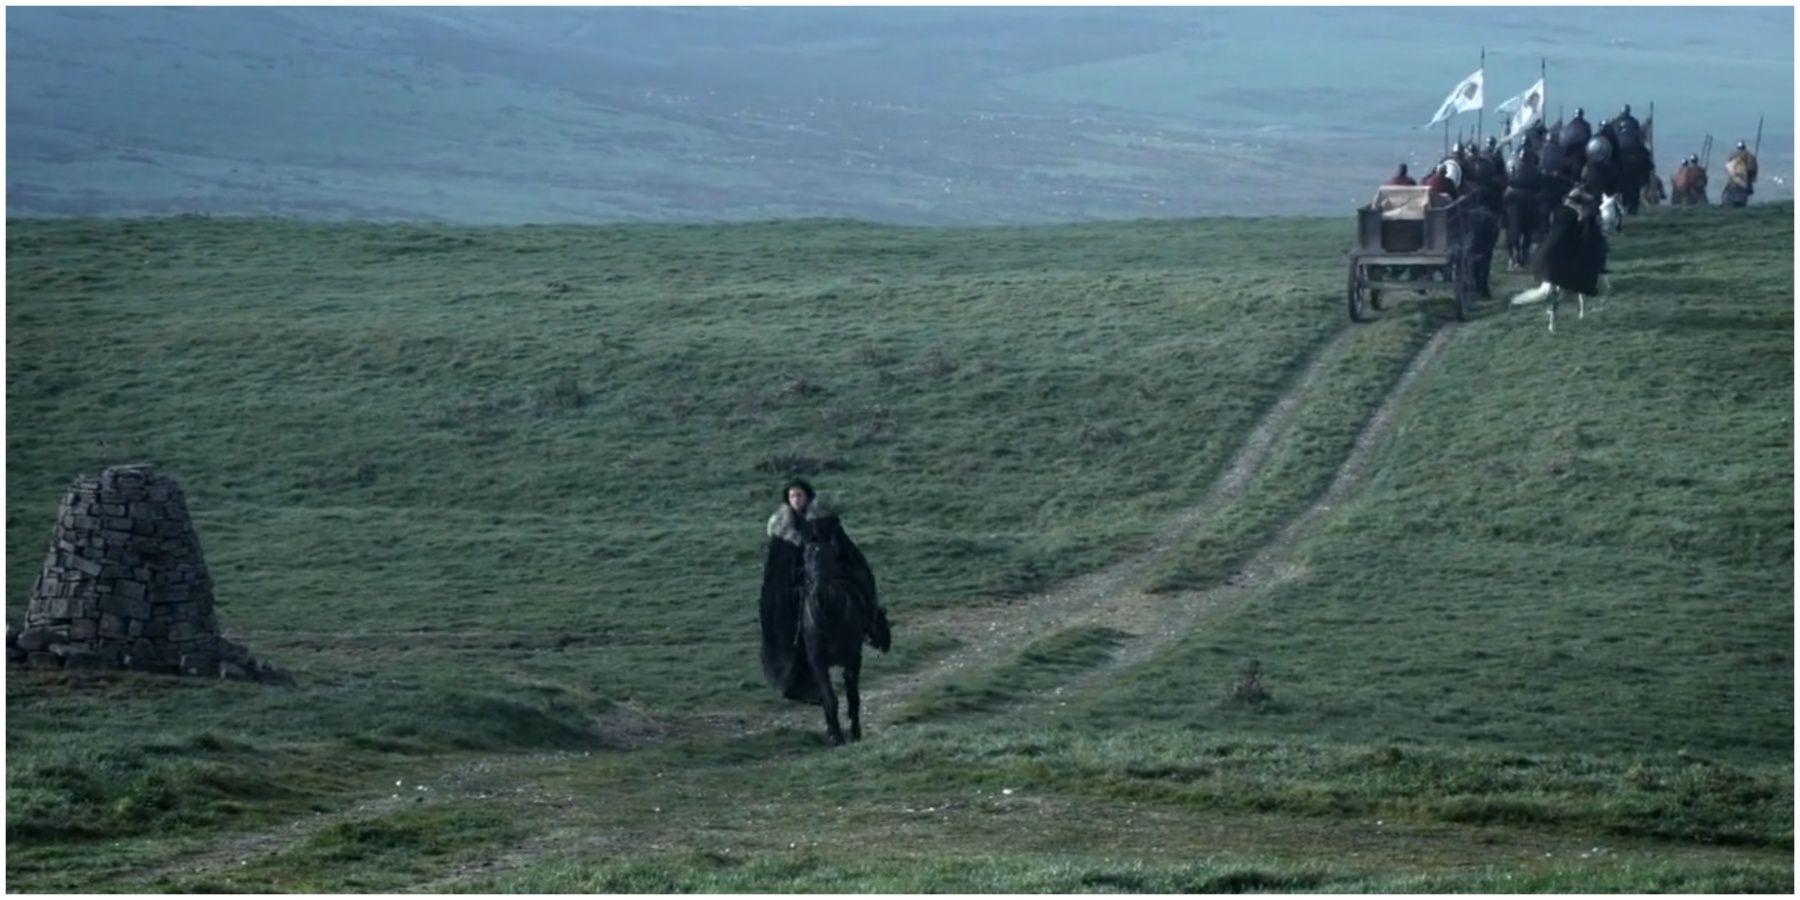 Jon Snow leaves for Castle Black in Game of Thrones season 1.